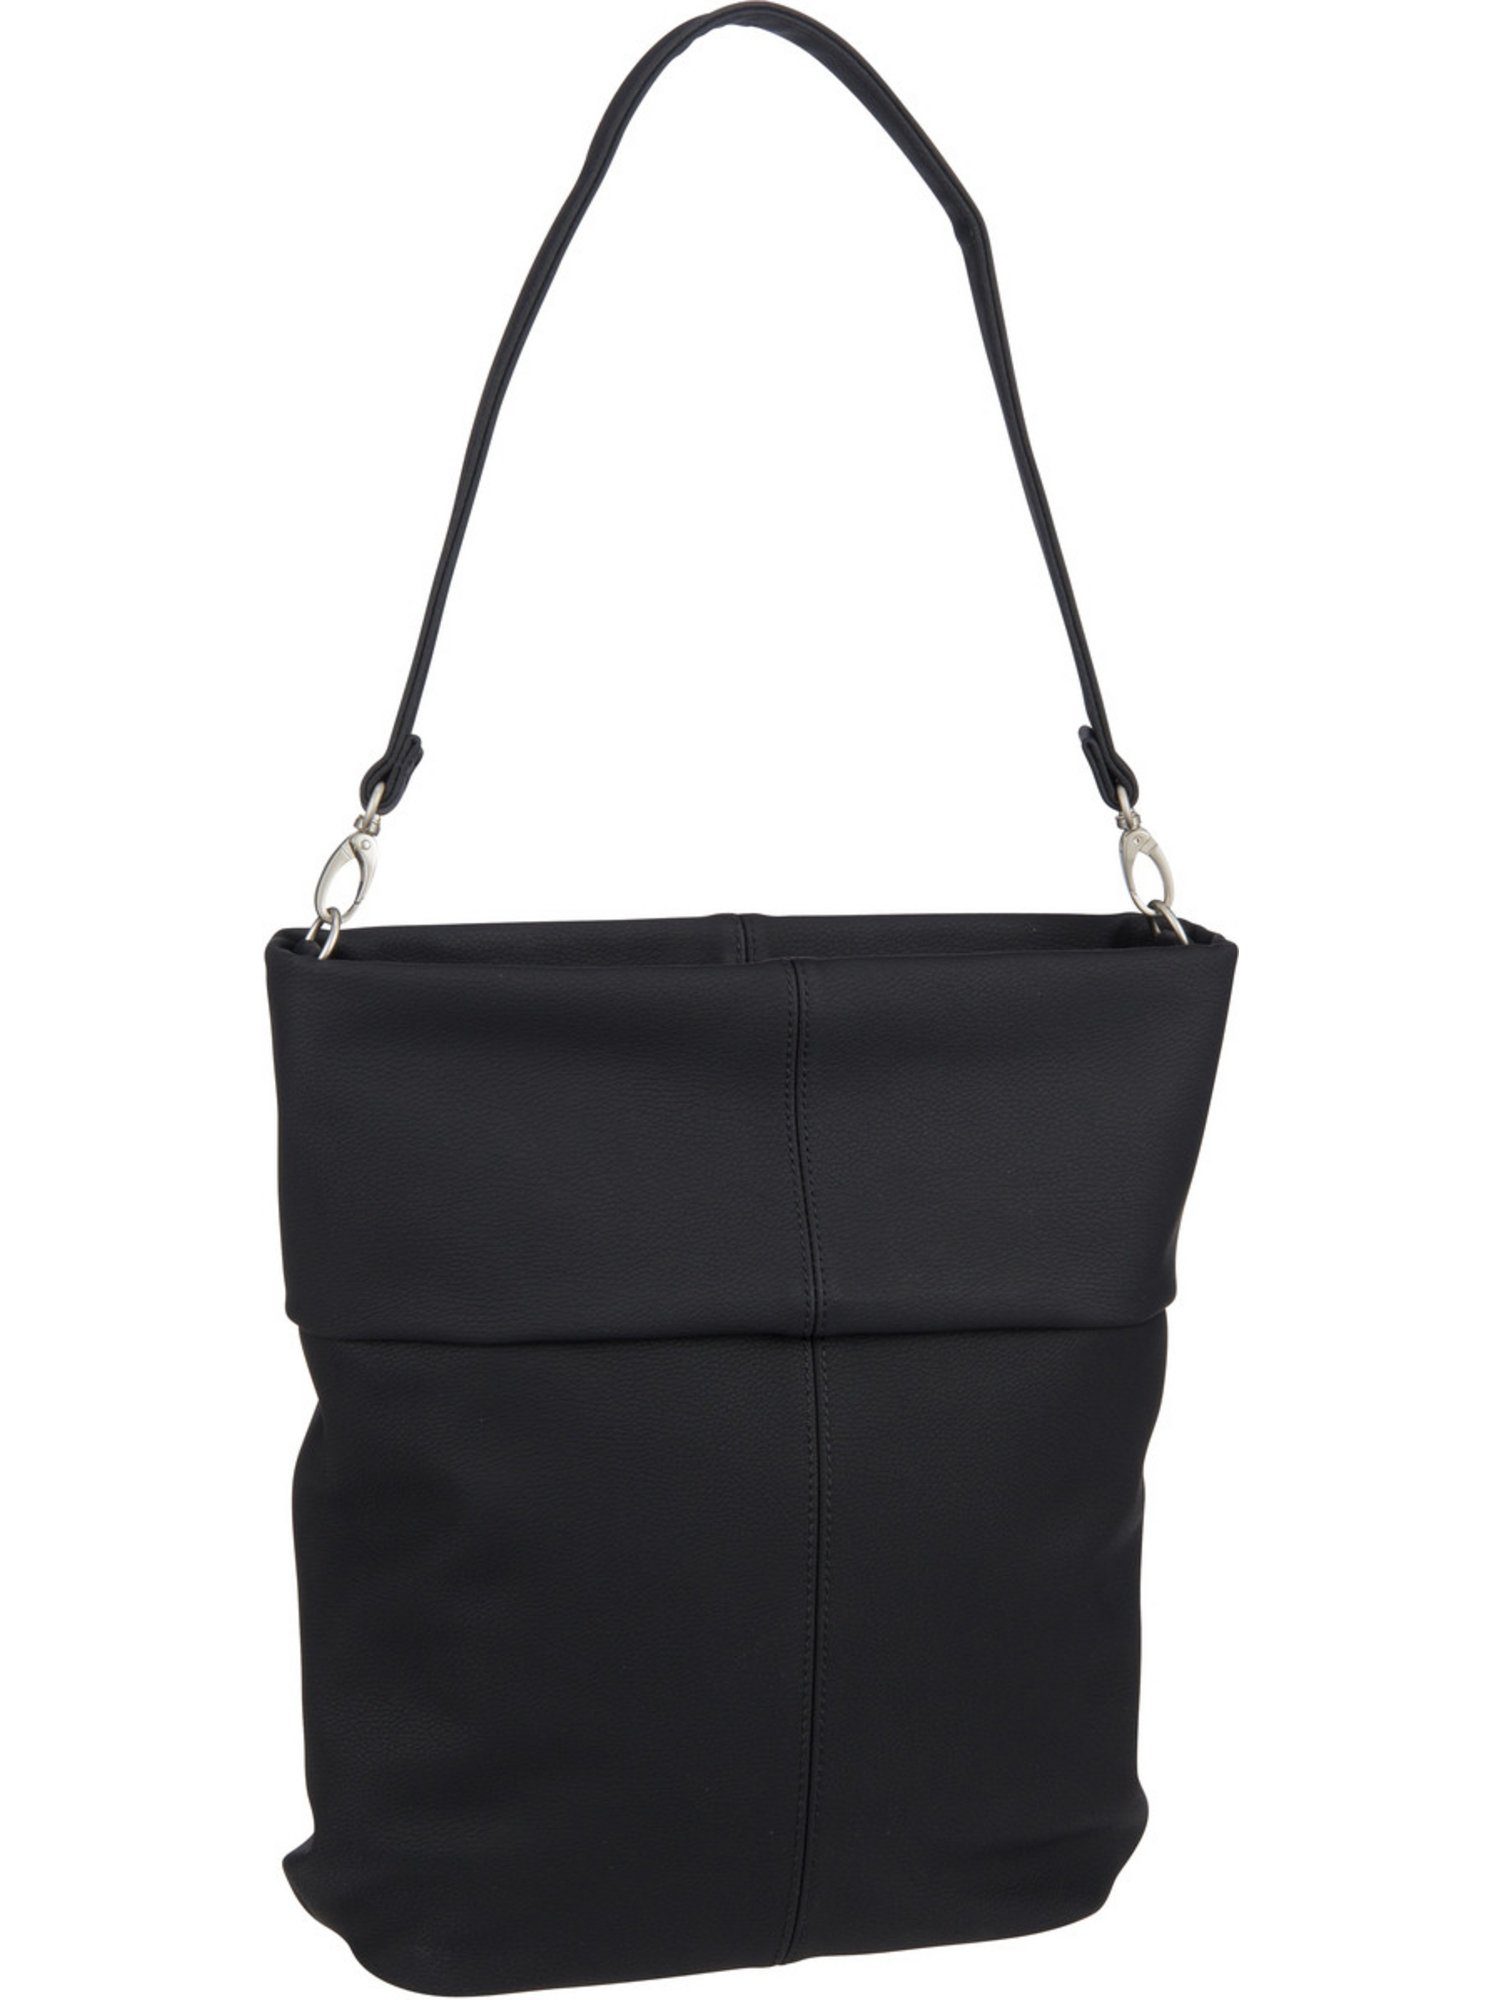 Zwei Handtasche Mademoiselle M12, Hobo Bag Nubuk/Black